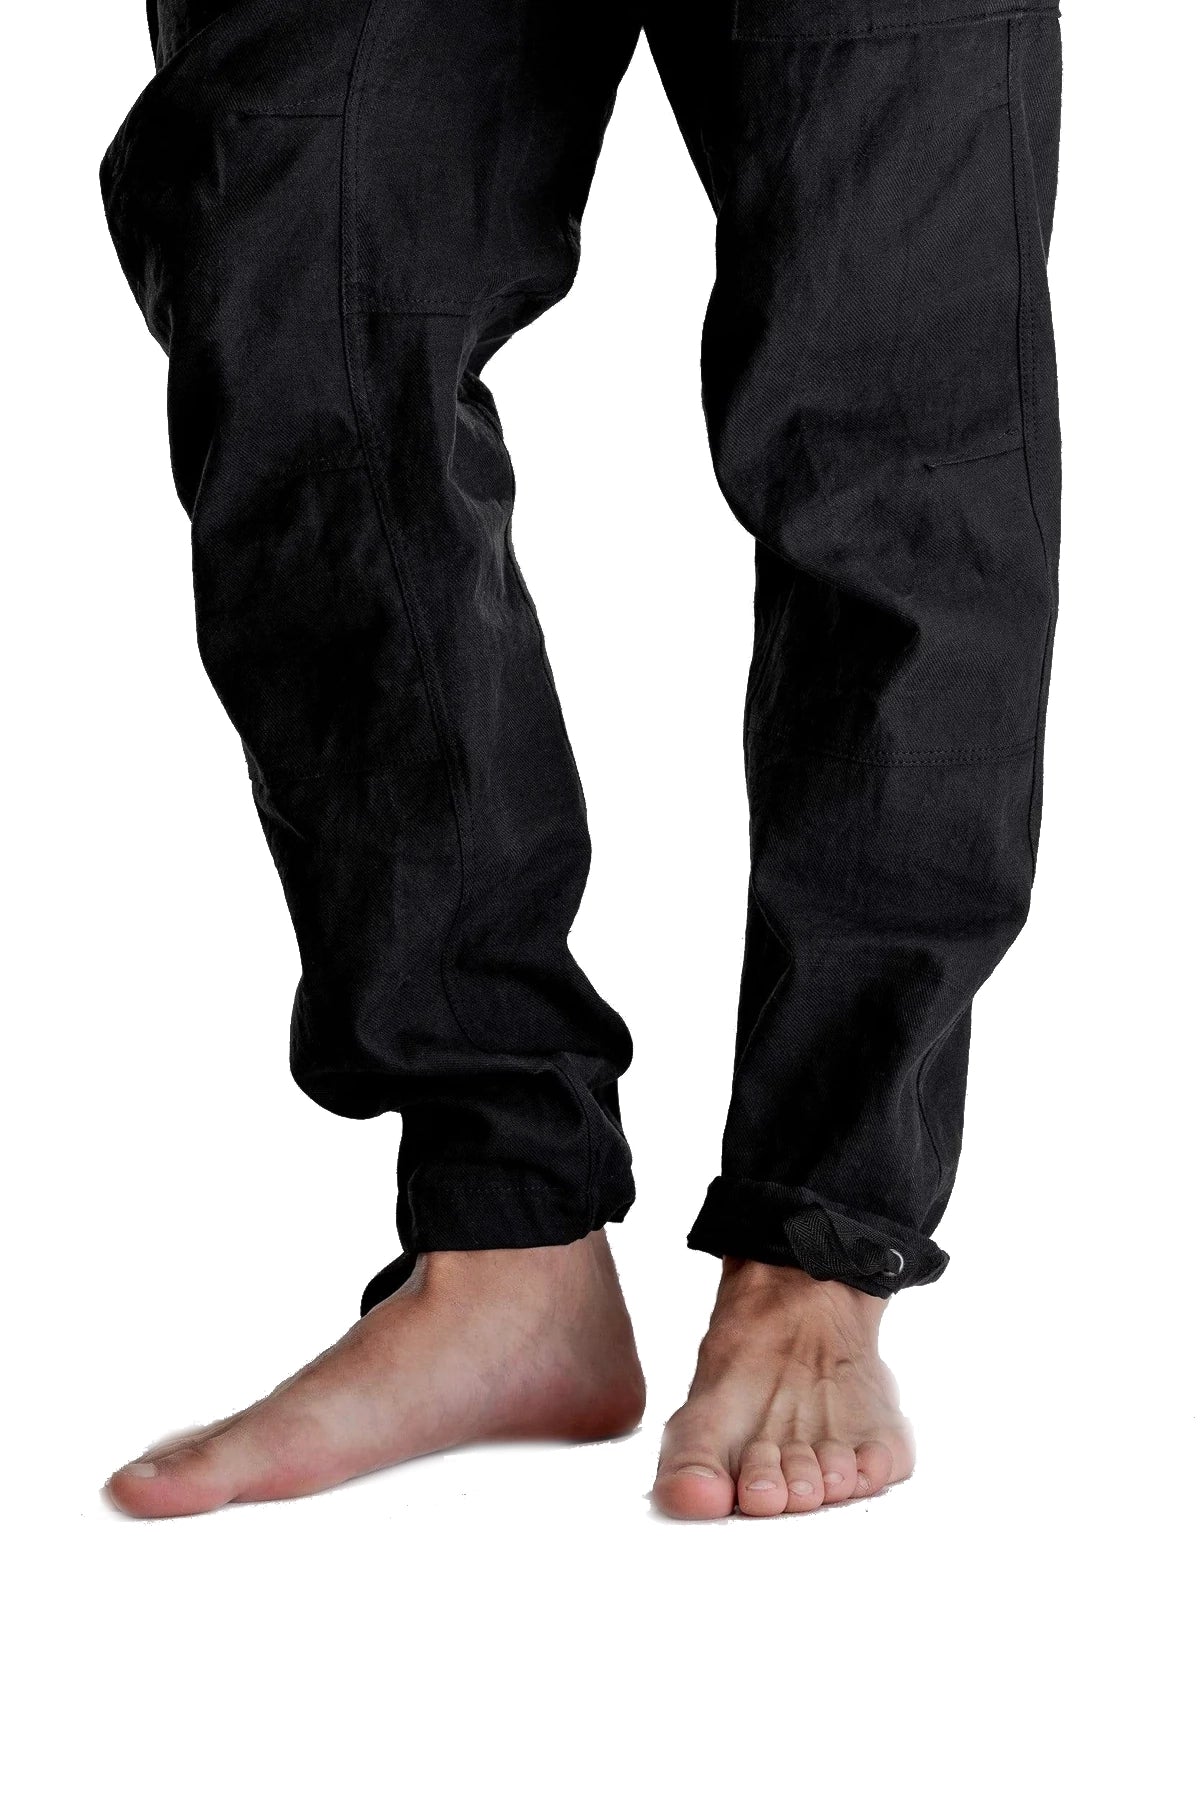 Men's cotton pants